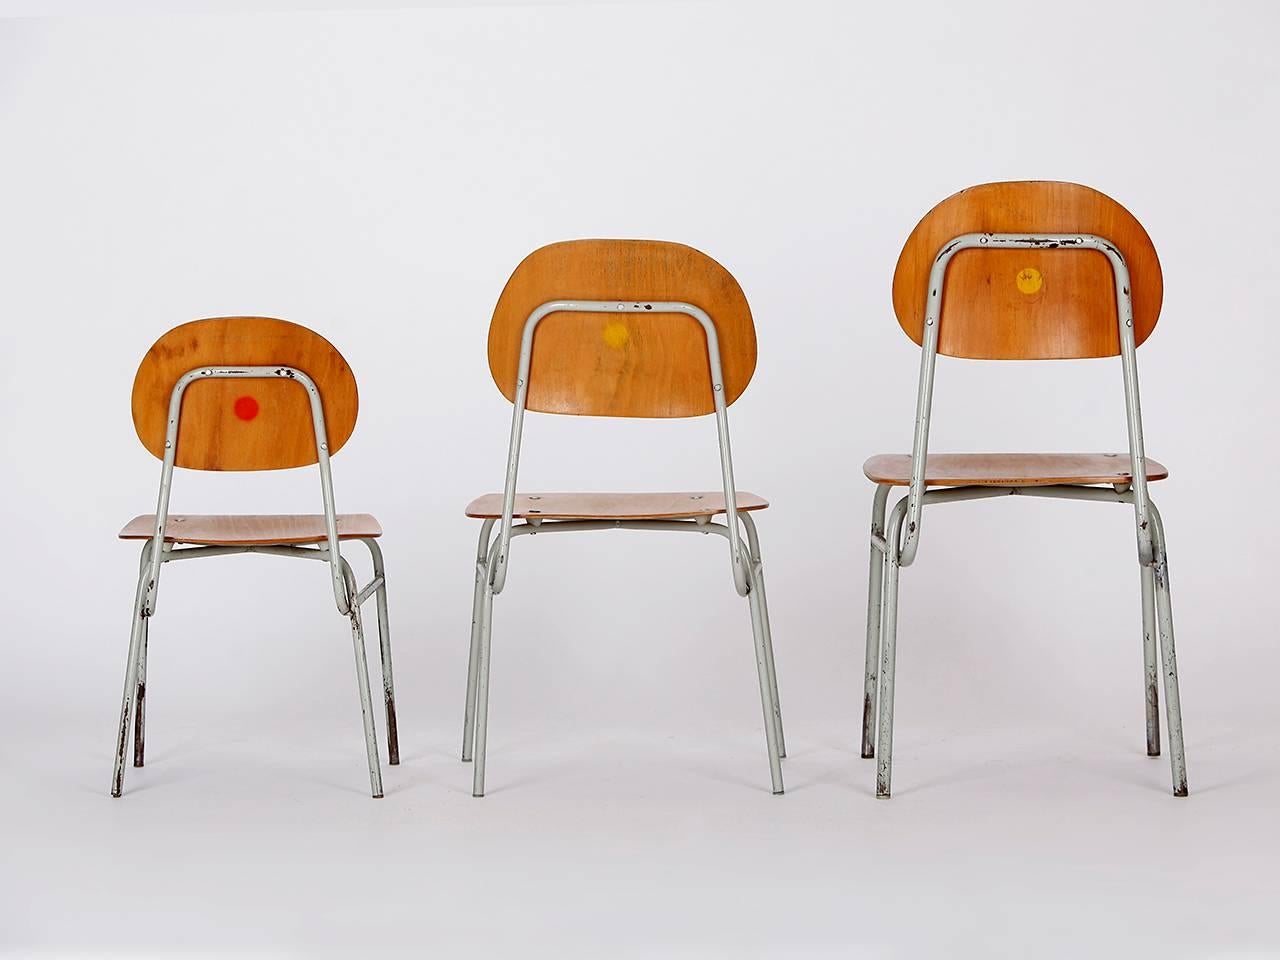 Les chaises viennent d'une école primaire tchèque. Fabriqué dans les années 1960. Les parties en bois ont été restaurées. Tube d'acier avec peinture et patine d'origine.
Dimensions : petit : hauteur du siège 11 x H 21 x L 12 x P 11 cm
Medium :